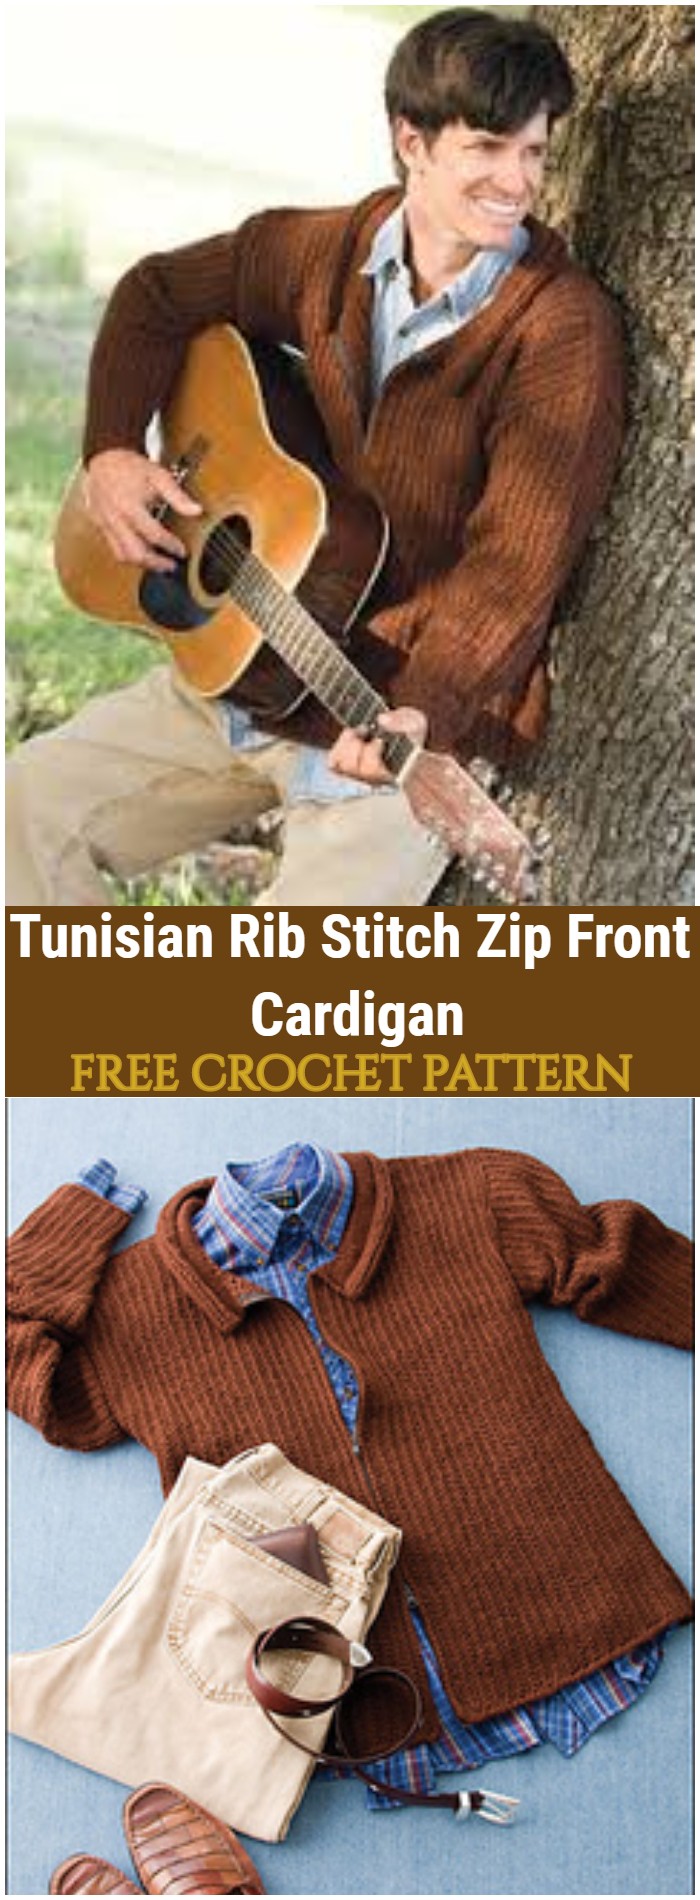 Crochet Tunisian Rib Stitch Zip Front Cardigan